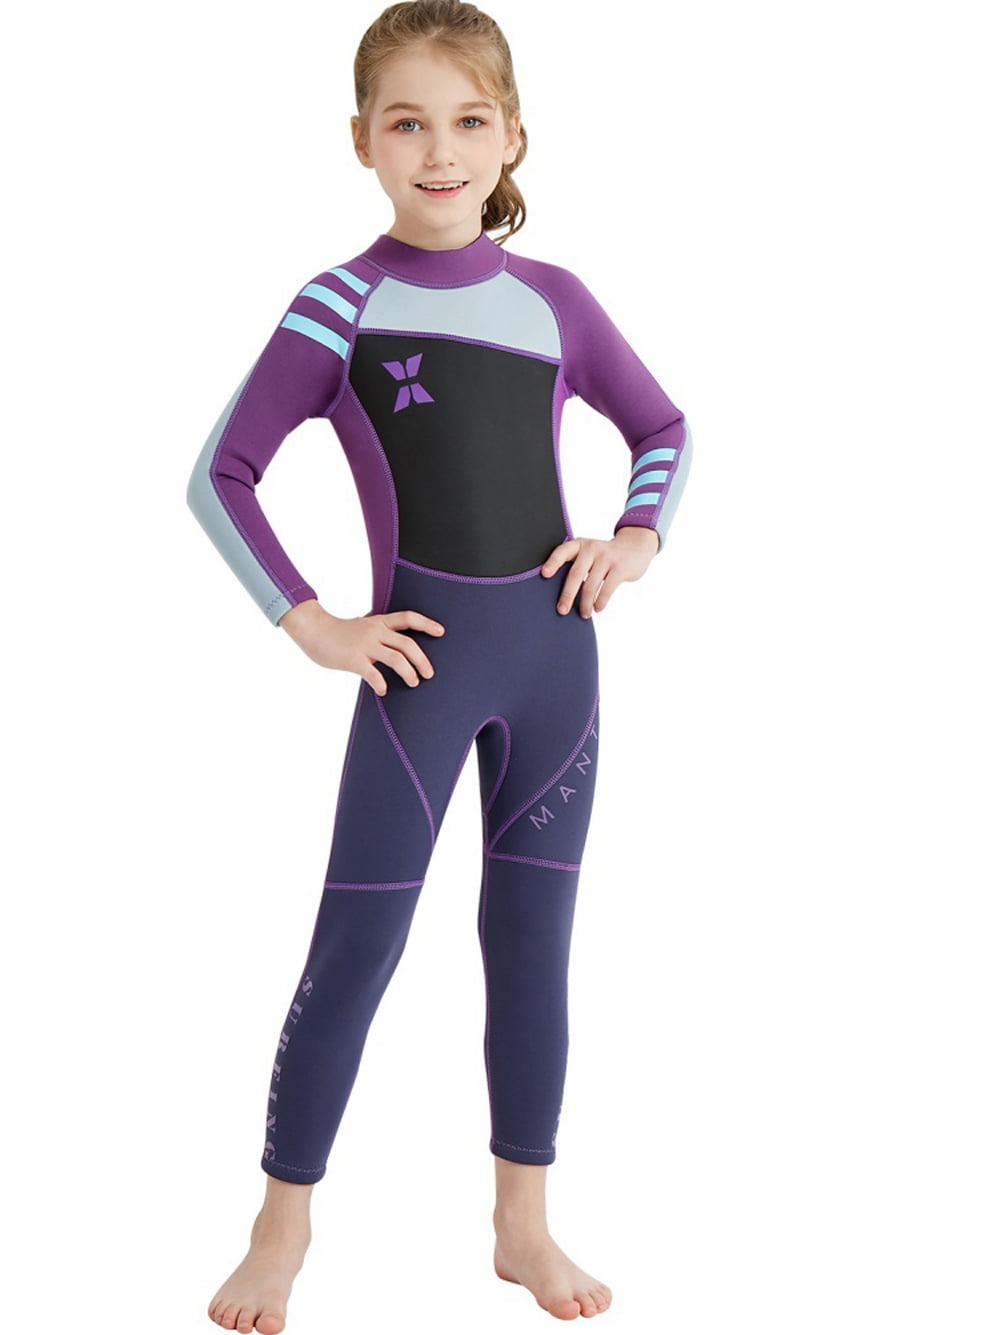 Details about   Kids One-Piece Swimsuit Neoprene Wetsuit Boys Girls Long Sleeve Swimwear 